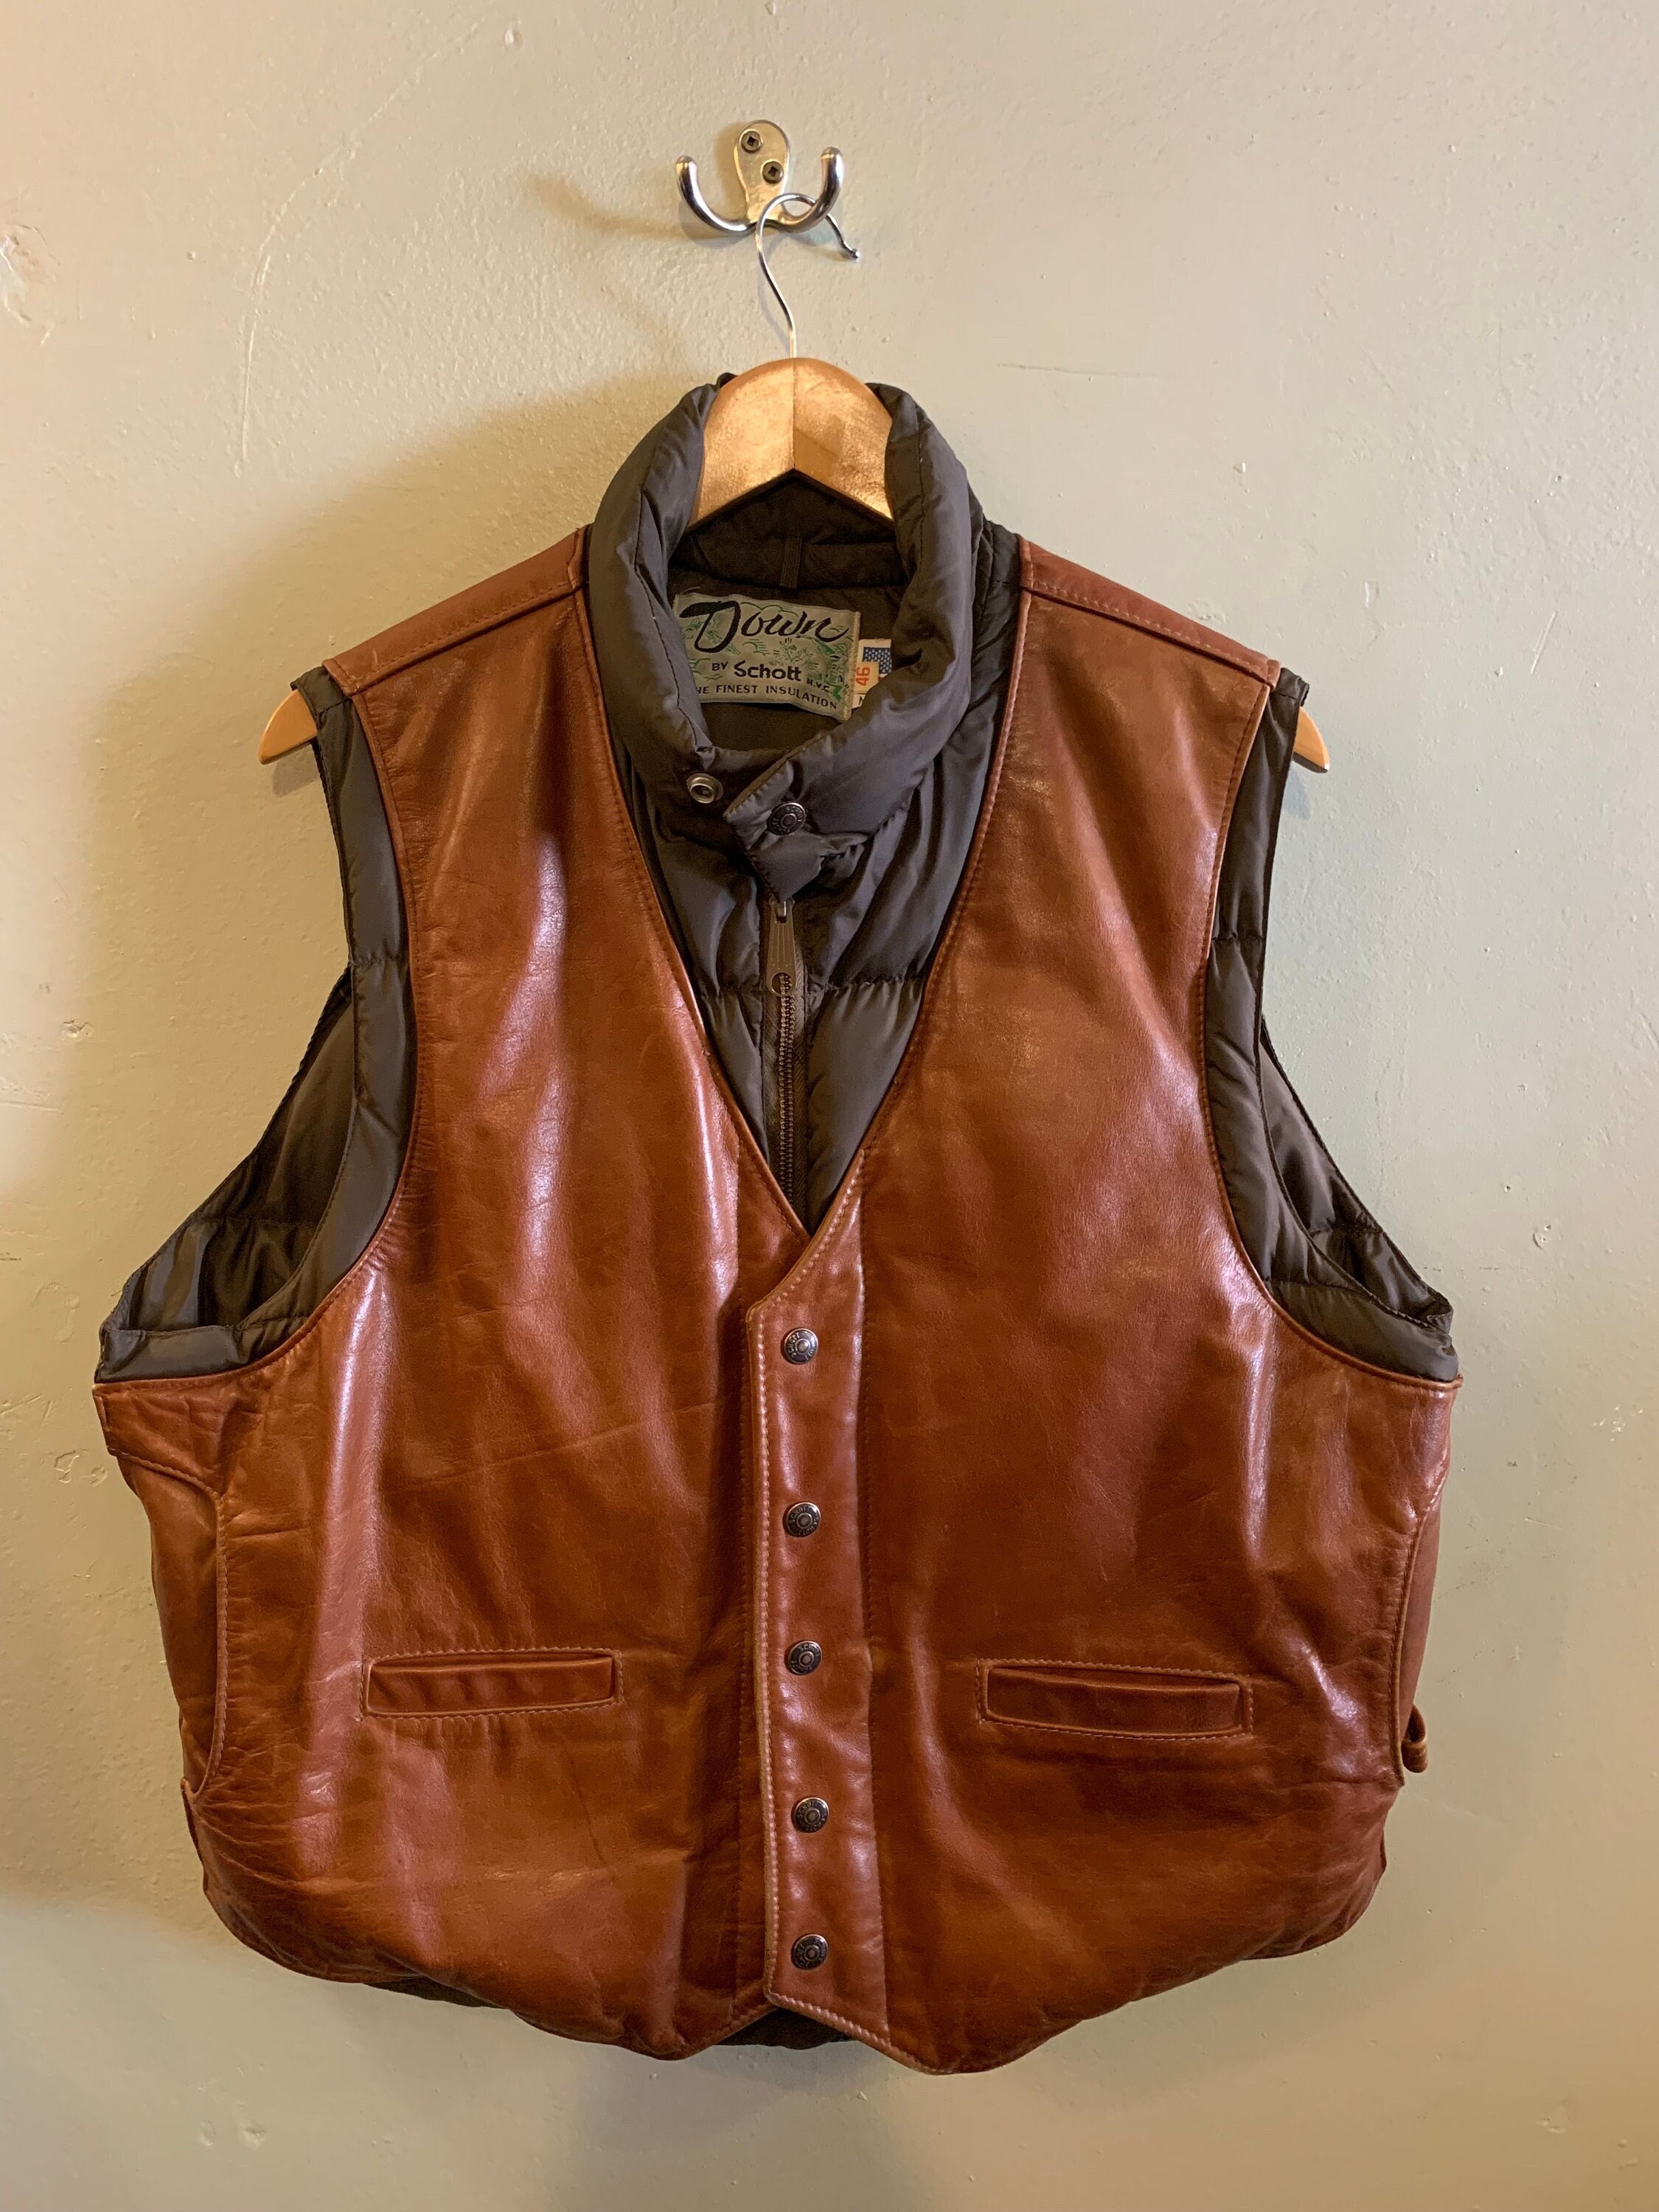 早期予約・新じゃが 【専用】schott Leather Vest MADE IN USA - 通販 